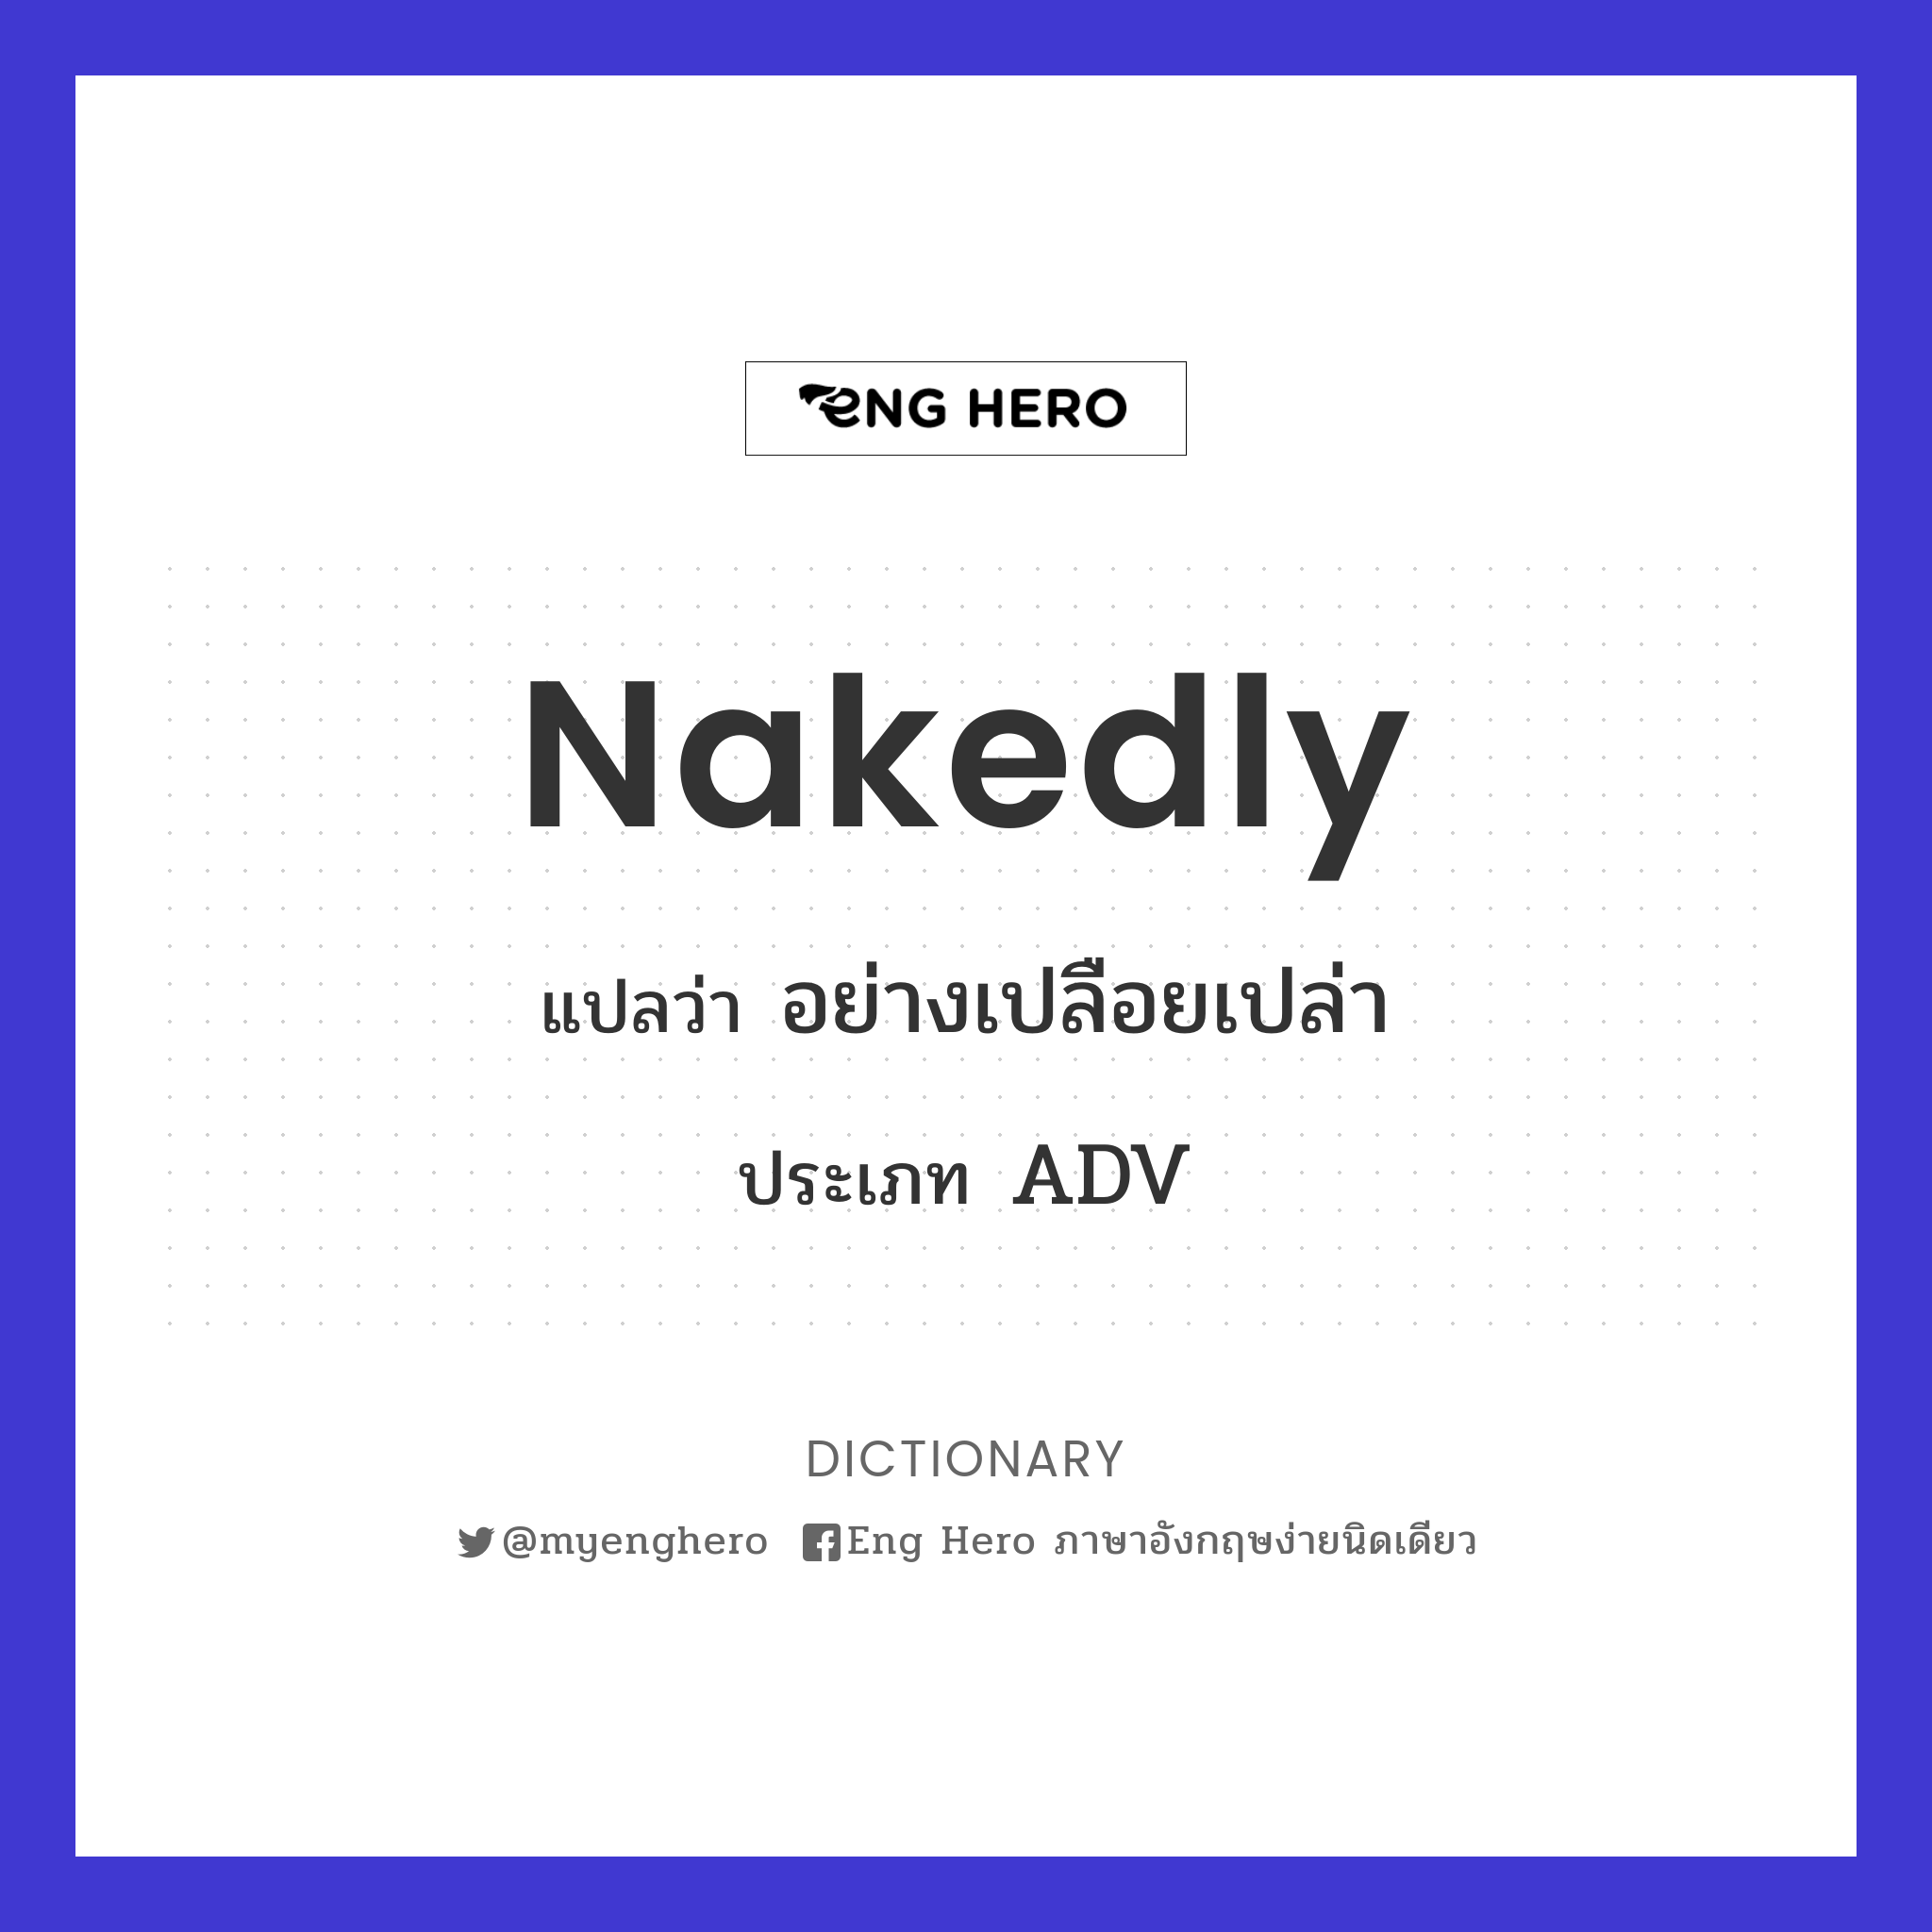 nakedly